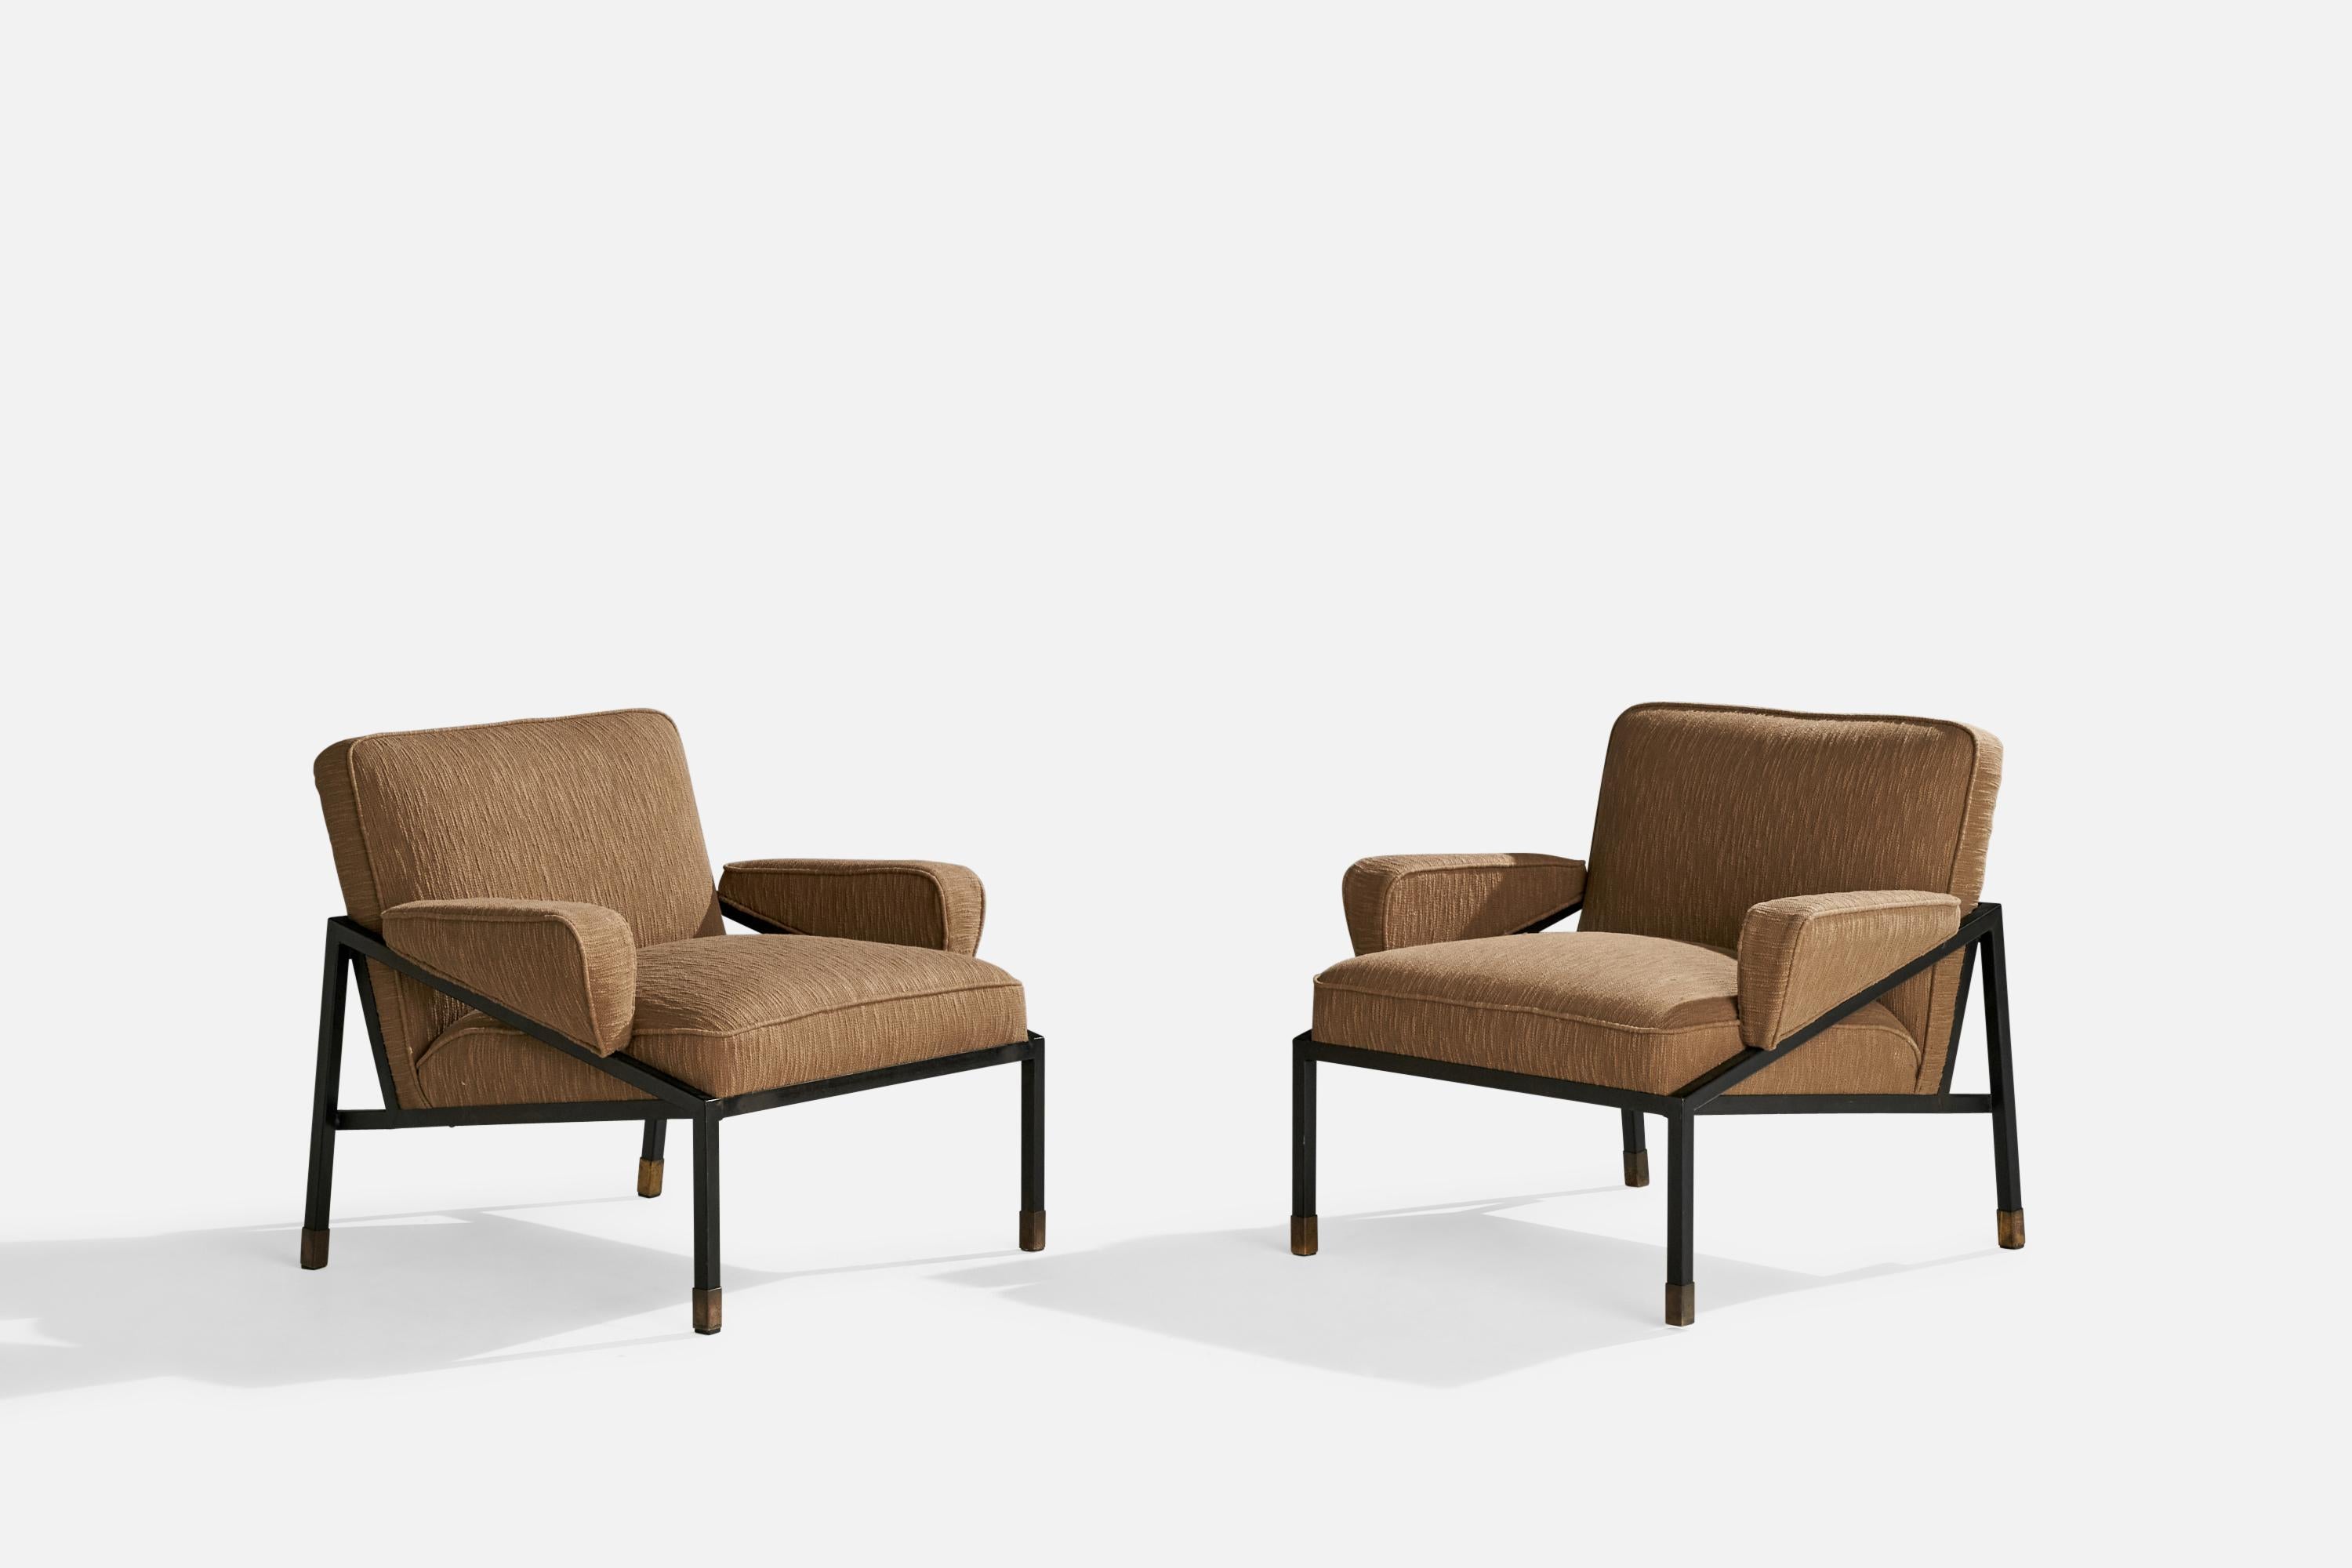 Paire de chaises de salon en métal laqué noir, laiton et tissu brun, conçues par D.R. Bates et Jackson Gregory, Jr et produit par Vista-Costa Mesa Furniture, USA, c. 1955.

Hauteur d'assise 16